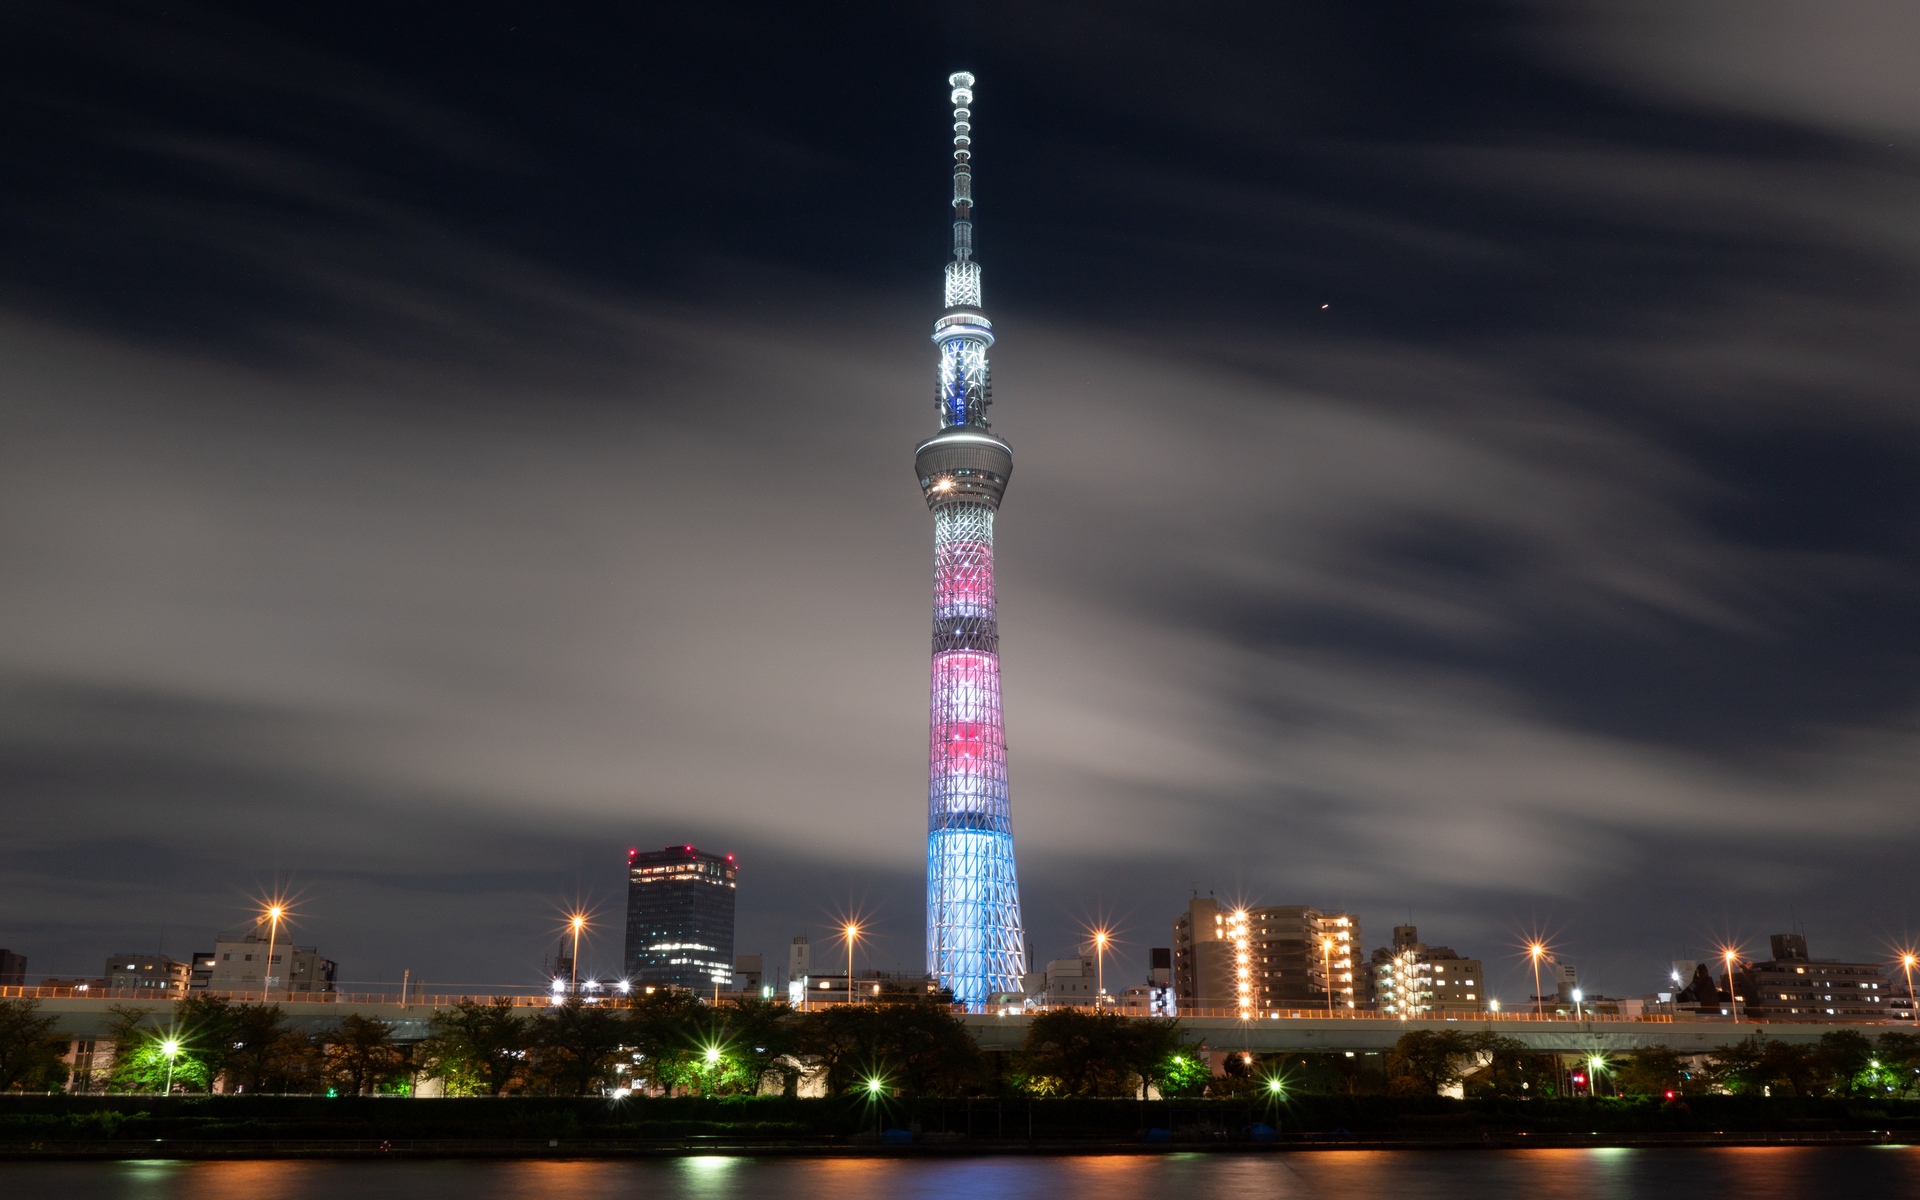 fond d'écran de la tour de tokyo,la tour,gratte ciel,zone métropolitaine,ville,ciel